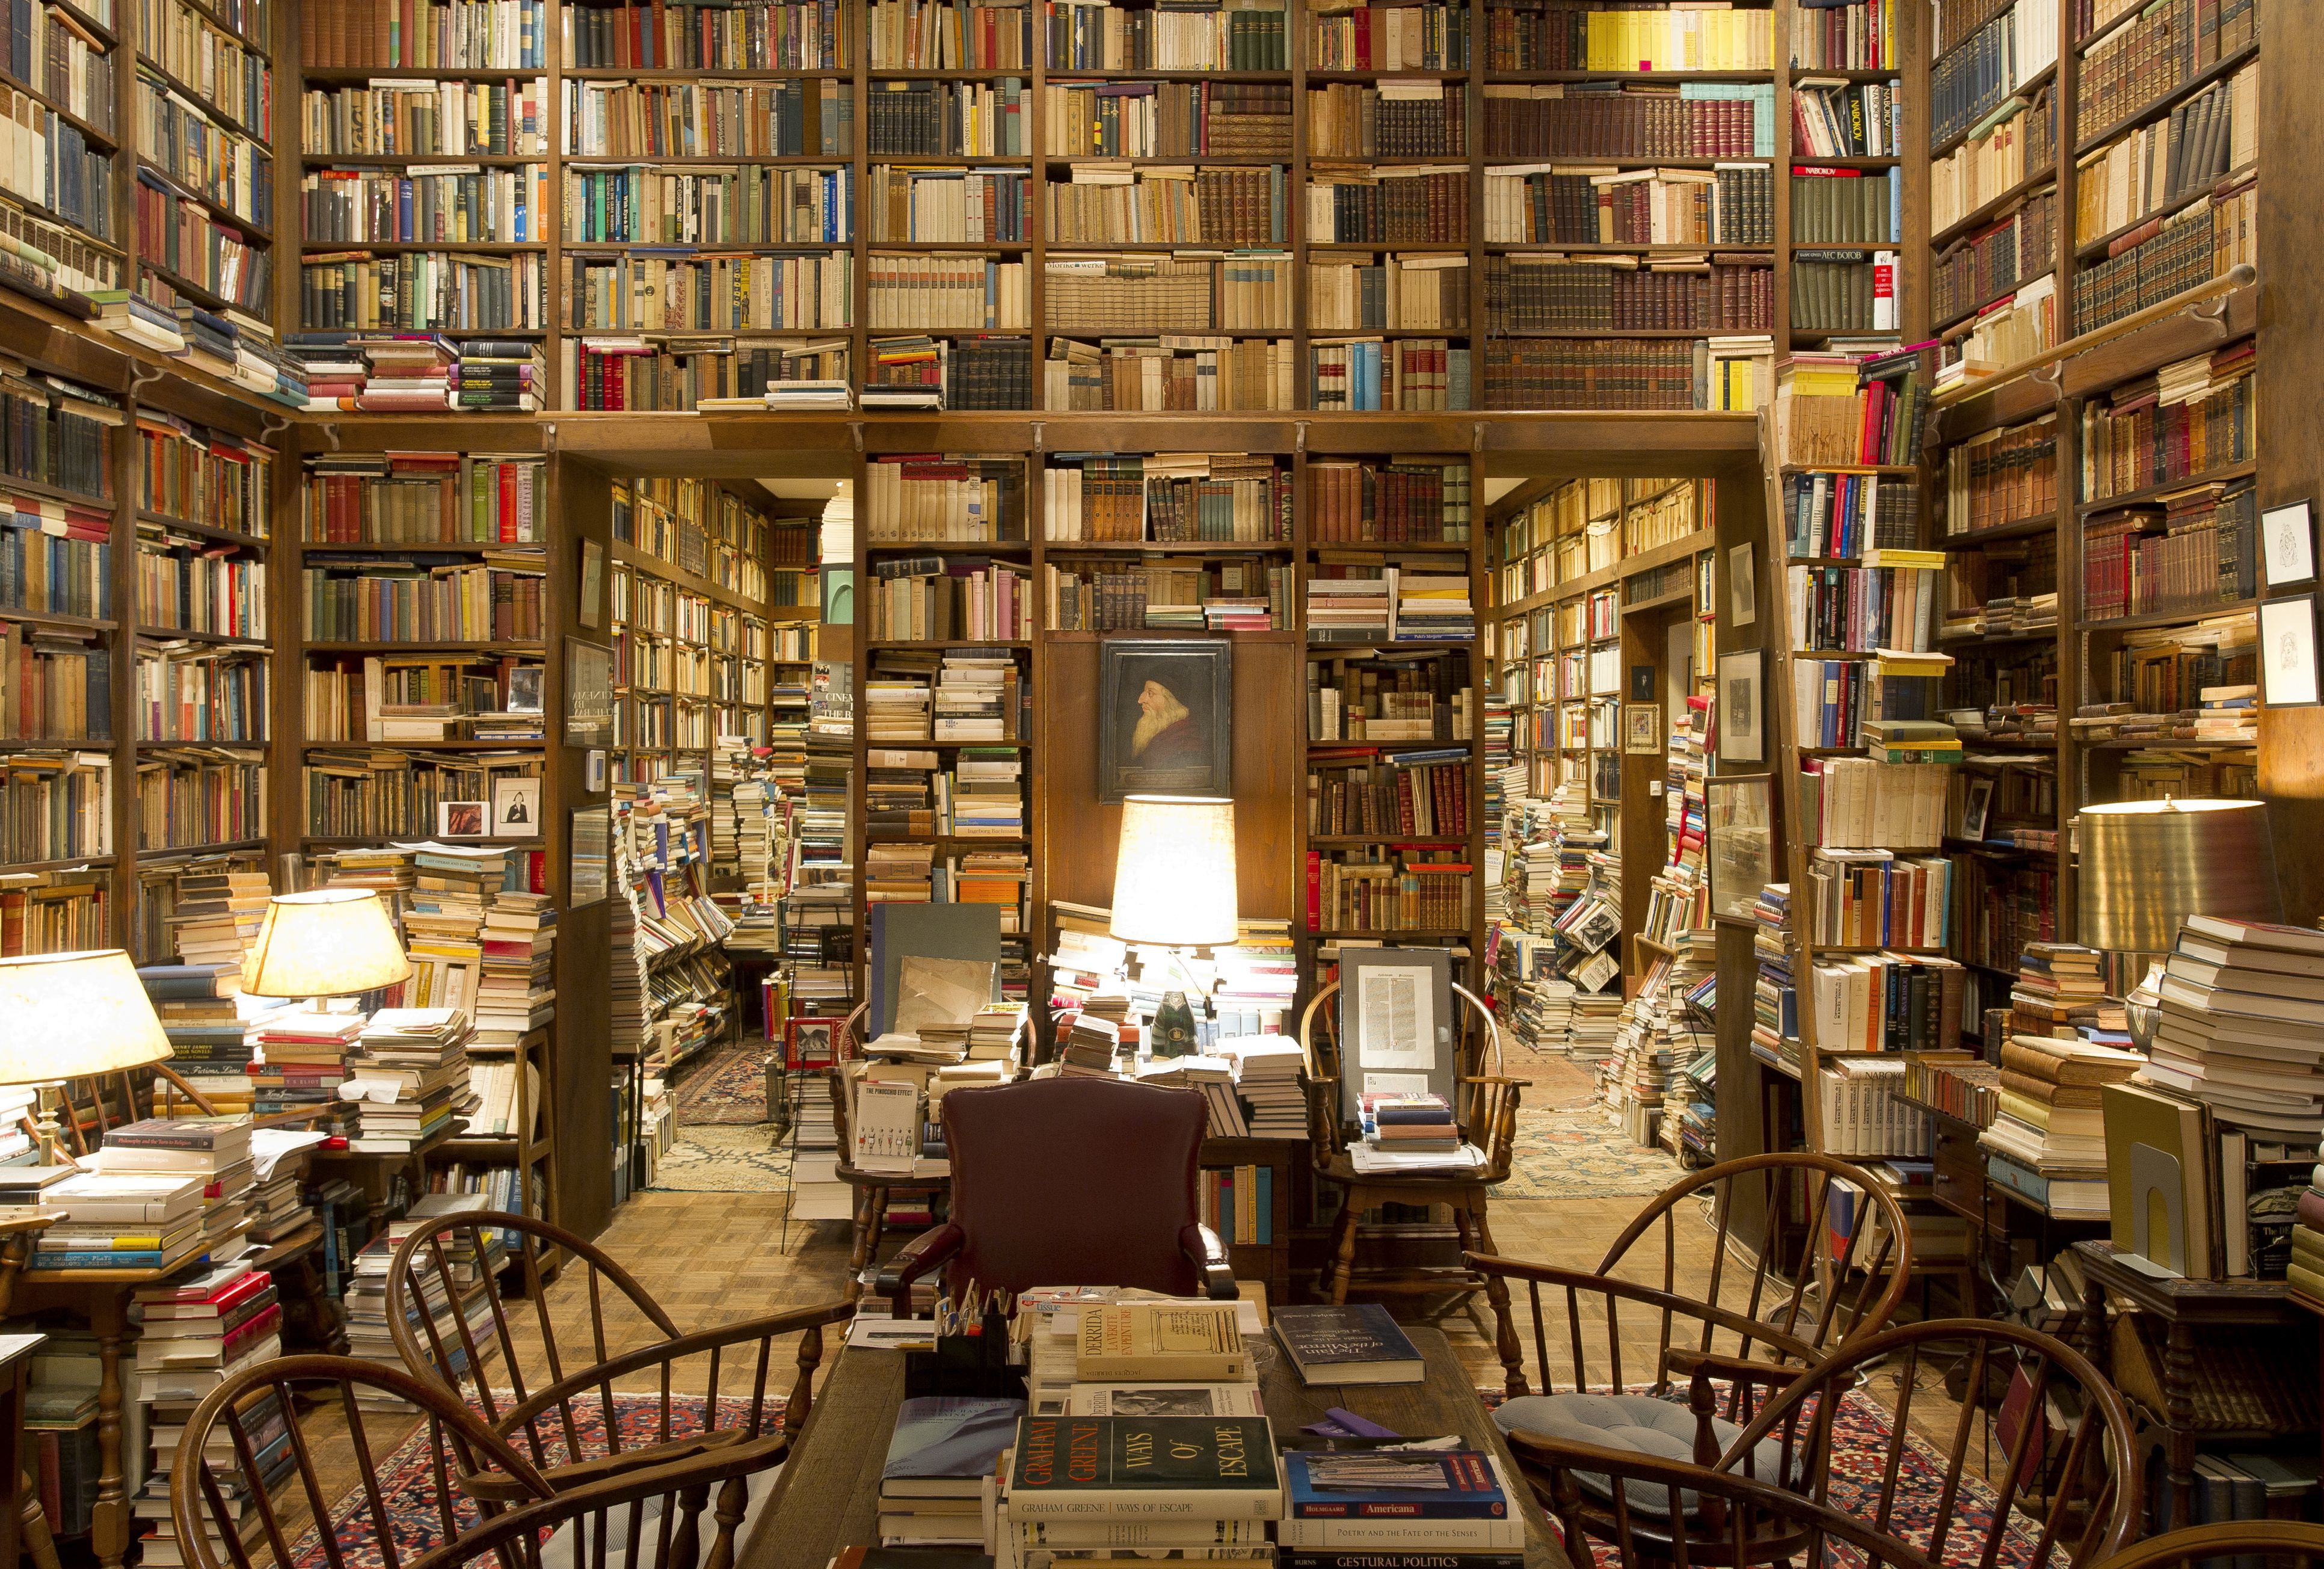 My shop кабинет. Библиотека Умберто эко. Библиотека Умберто эко в Милане. Умбе́рто э́ко библиотека. Полки для книг.